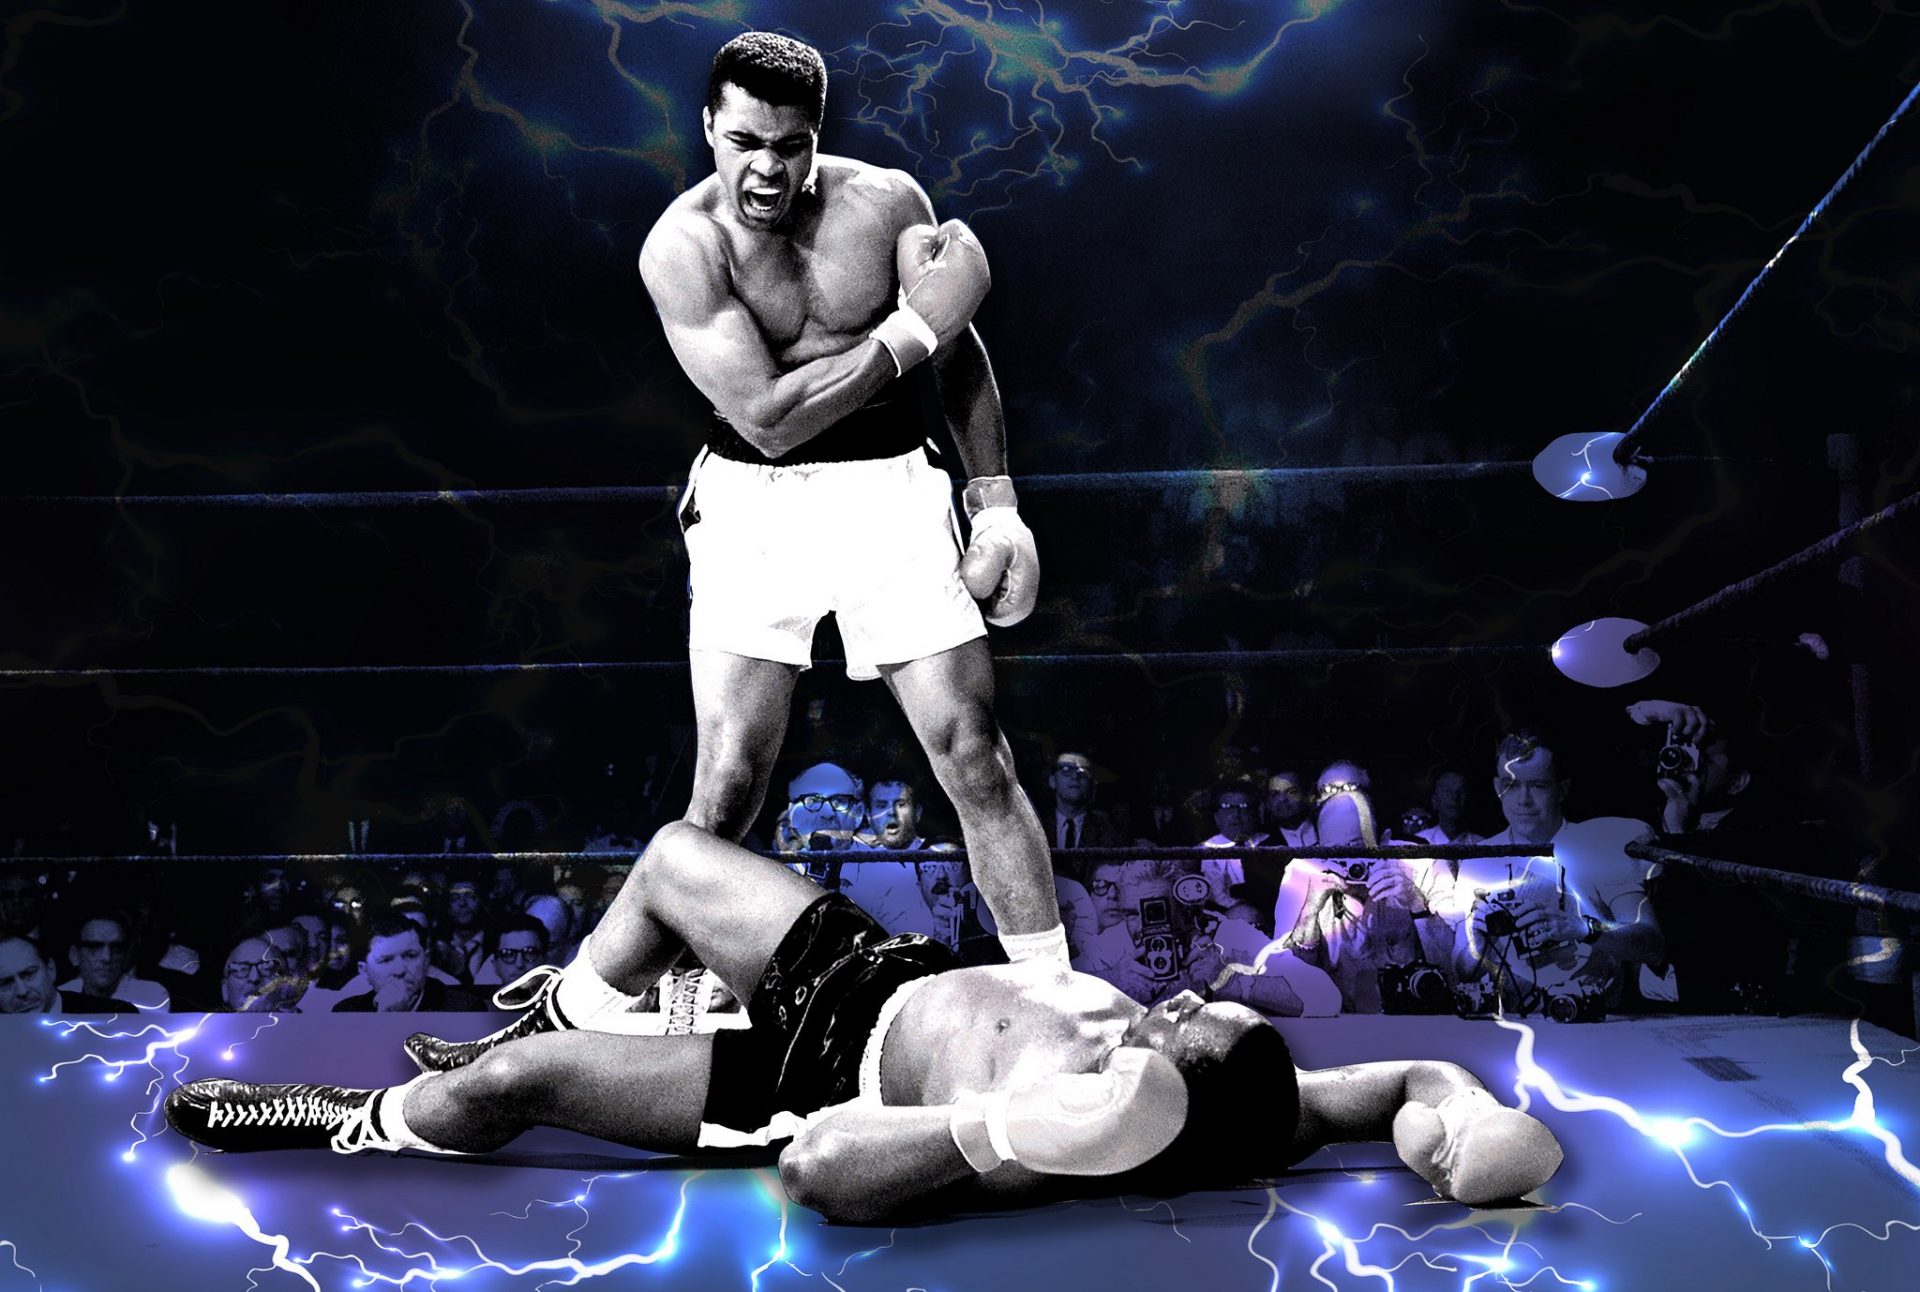 Muhammad Ali a brilliant boxer